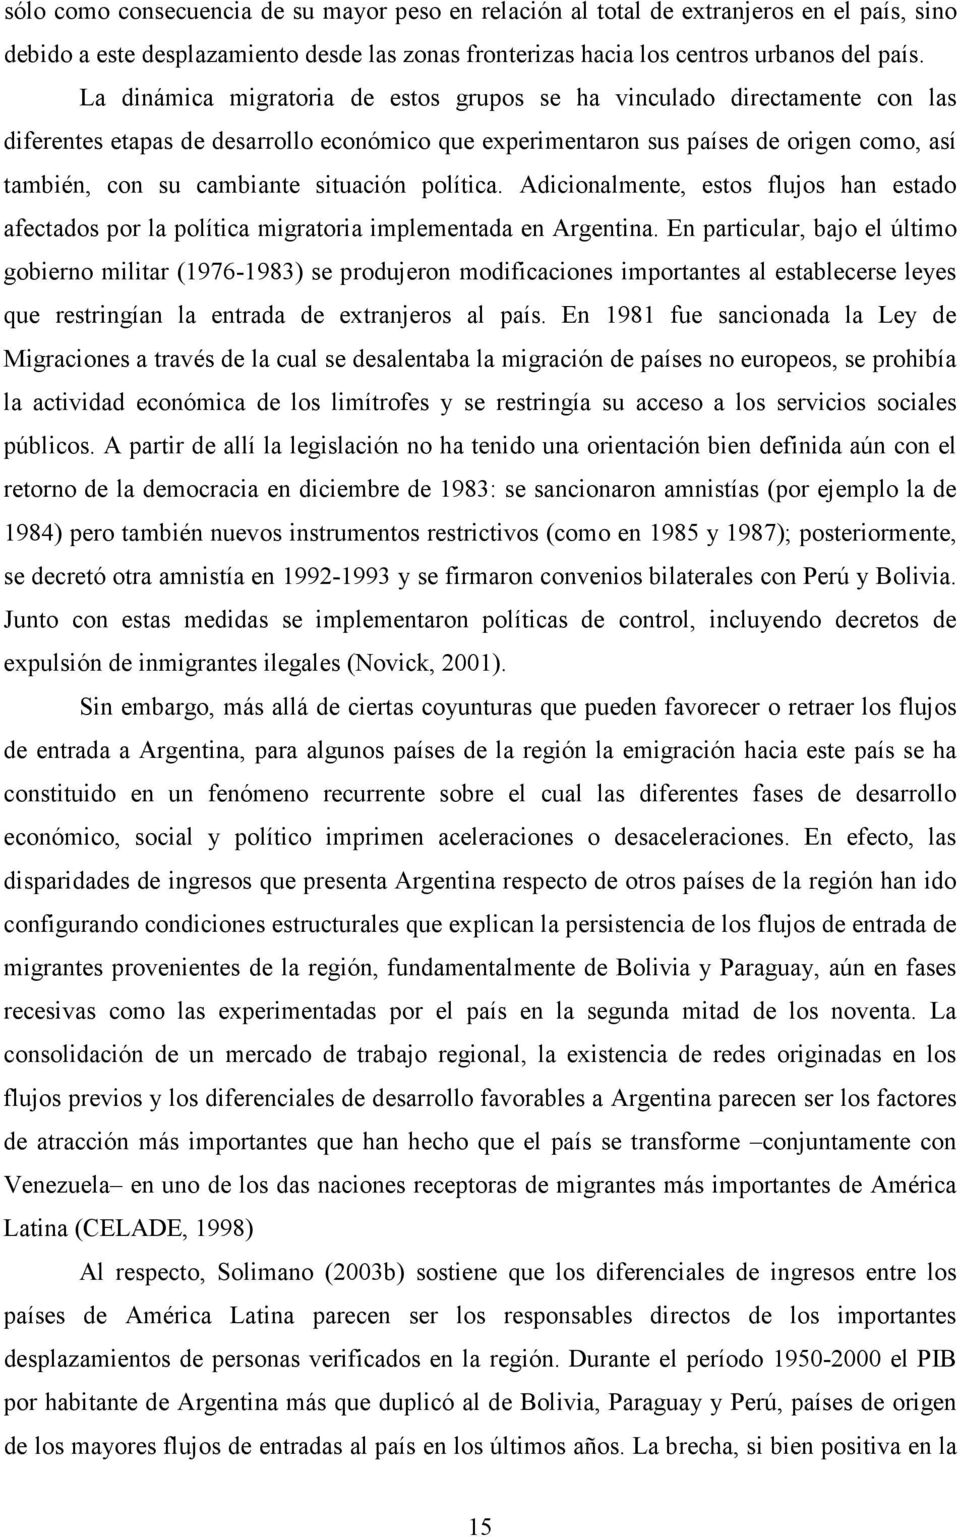 situación política. Adicionalmente, estos flujos han estado afectados por la política migratoria implementada en Argentina.